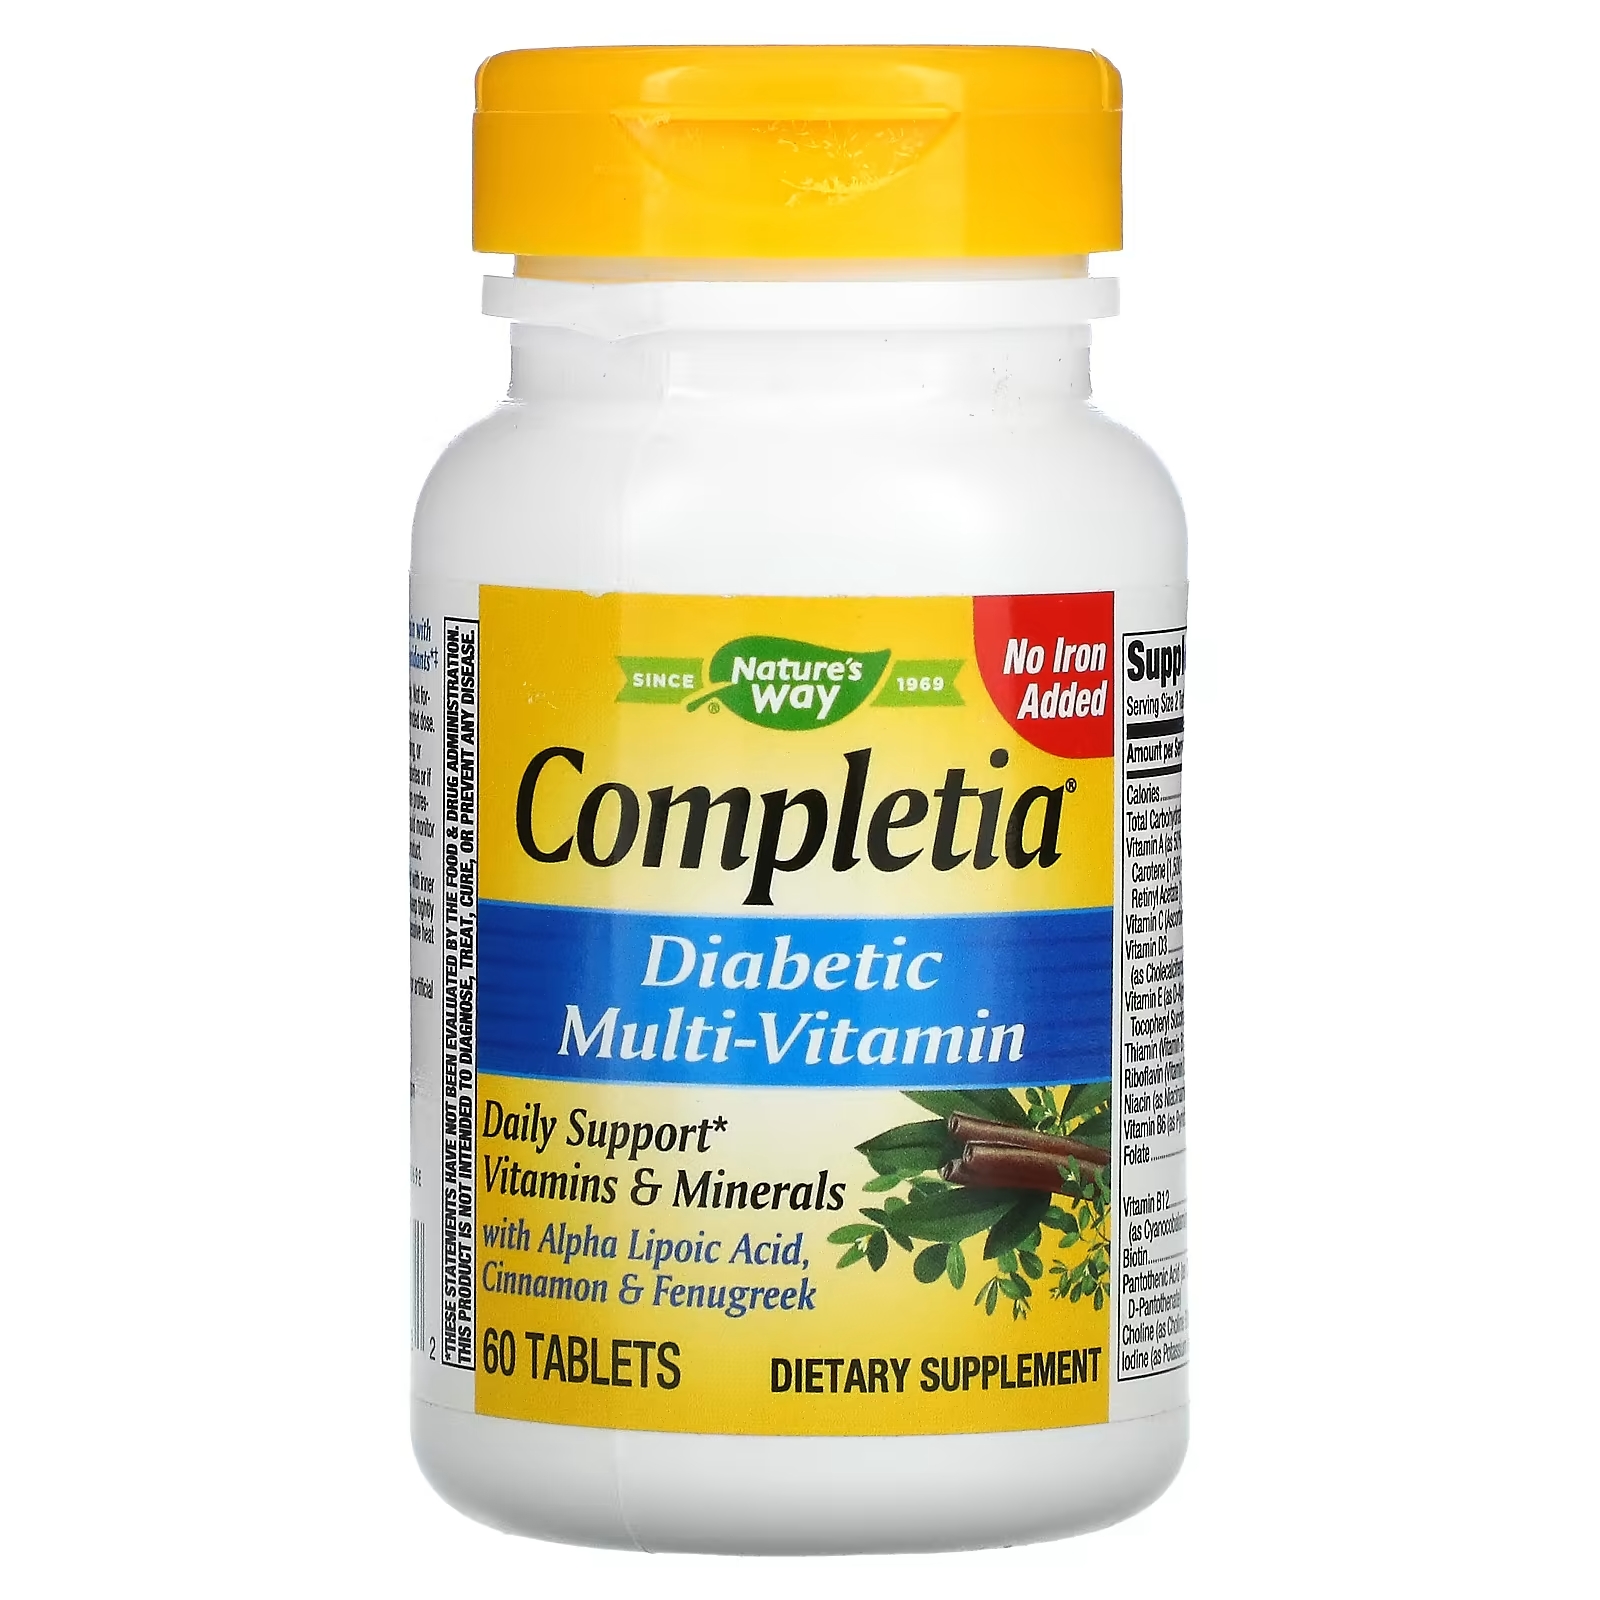 Nature's Way Completia мультивитаминный комплекс для диабетиков без спирта железа, 60 таблеток country life max for men мультивитаминный и минеральный комплекс без железа 60 таблеток